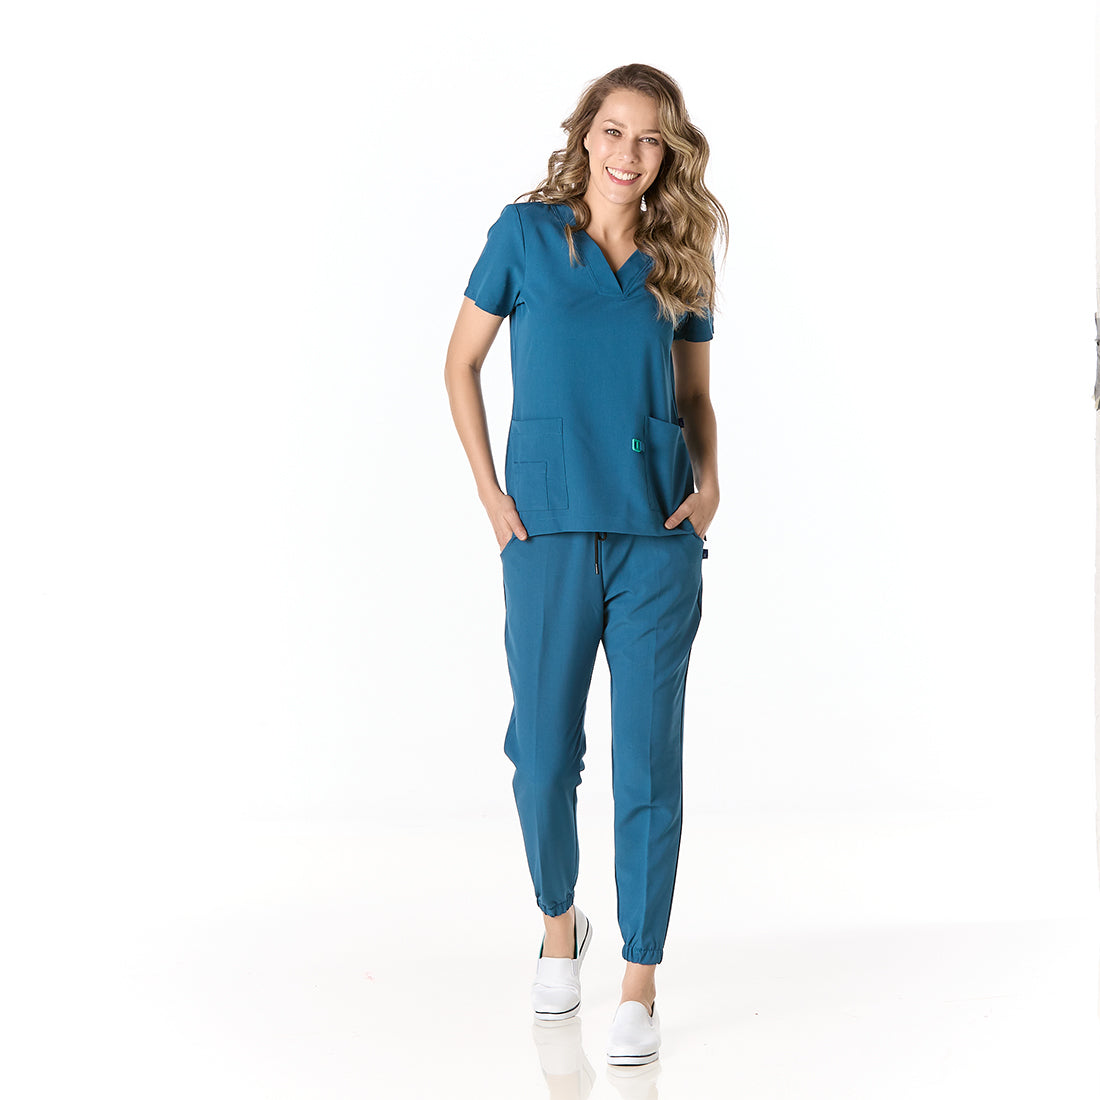 Mujer vistiendo pijama sanitario color azul turquesa con cuello en v y pantalon tipo jogger